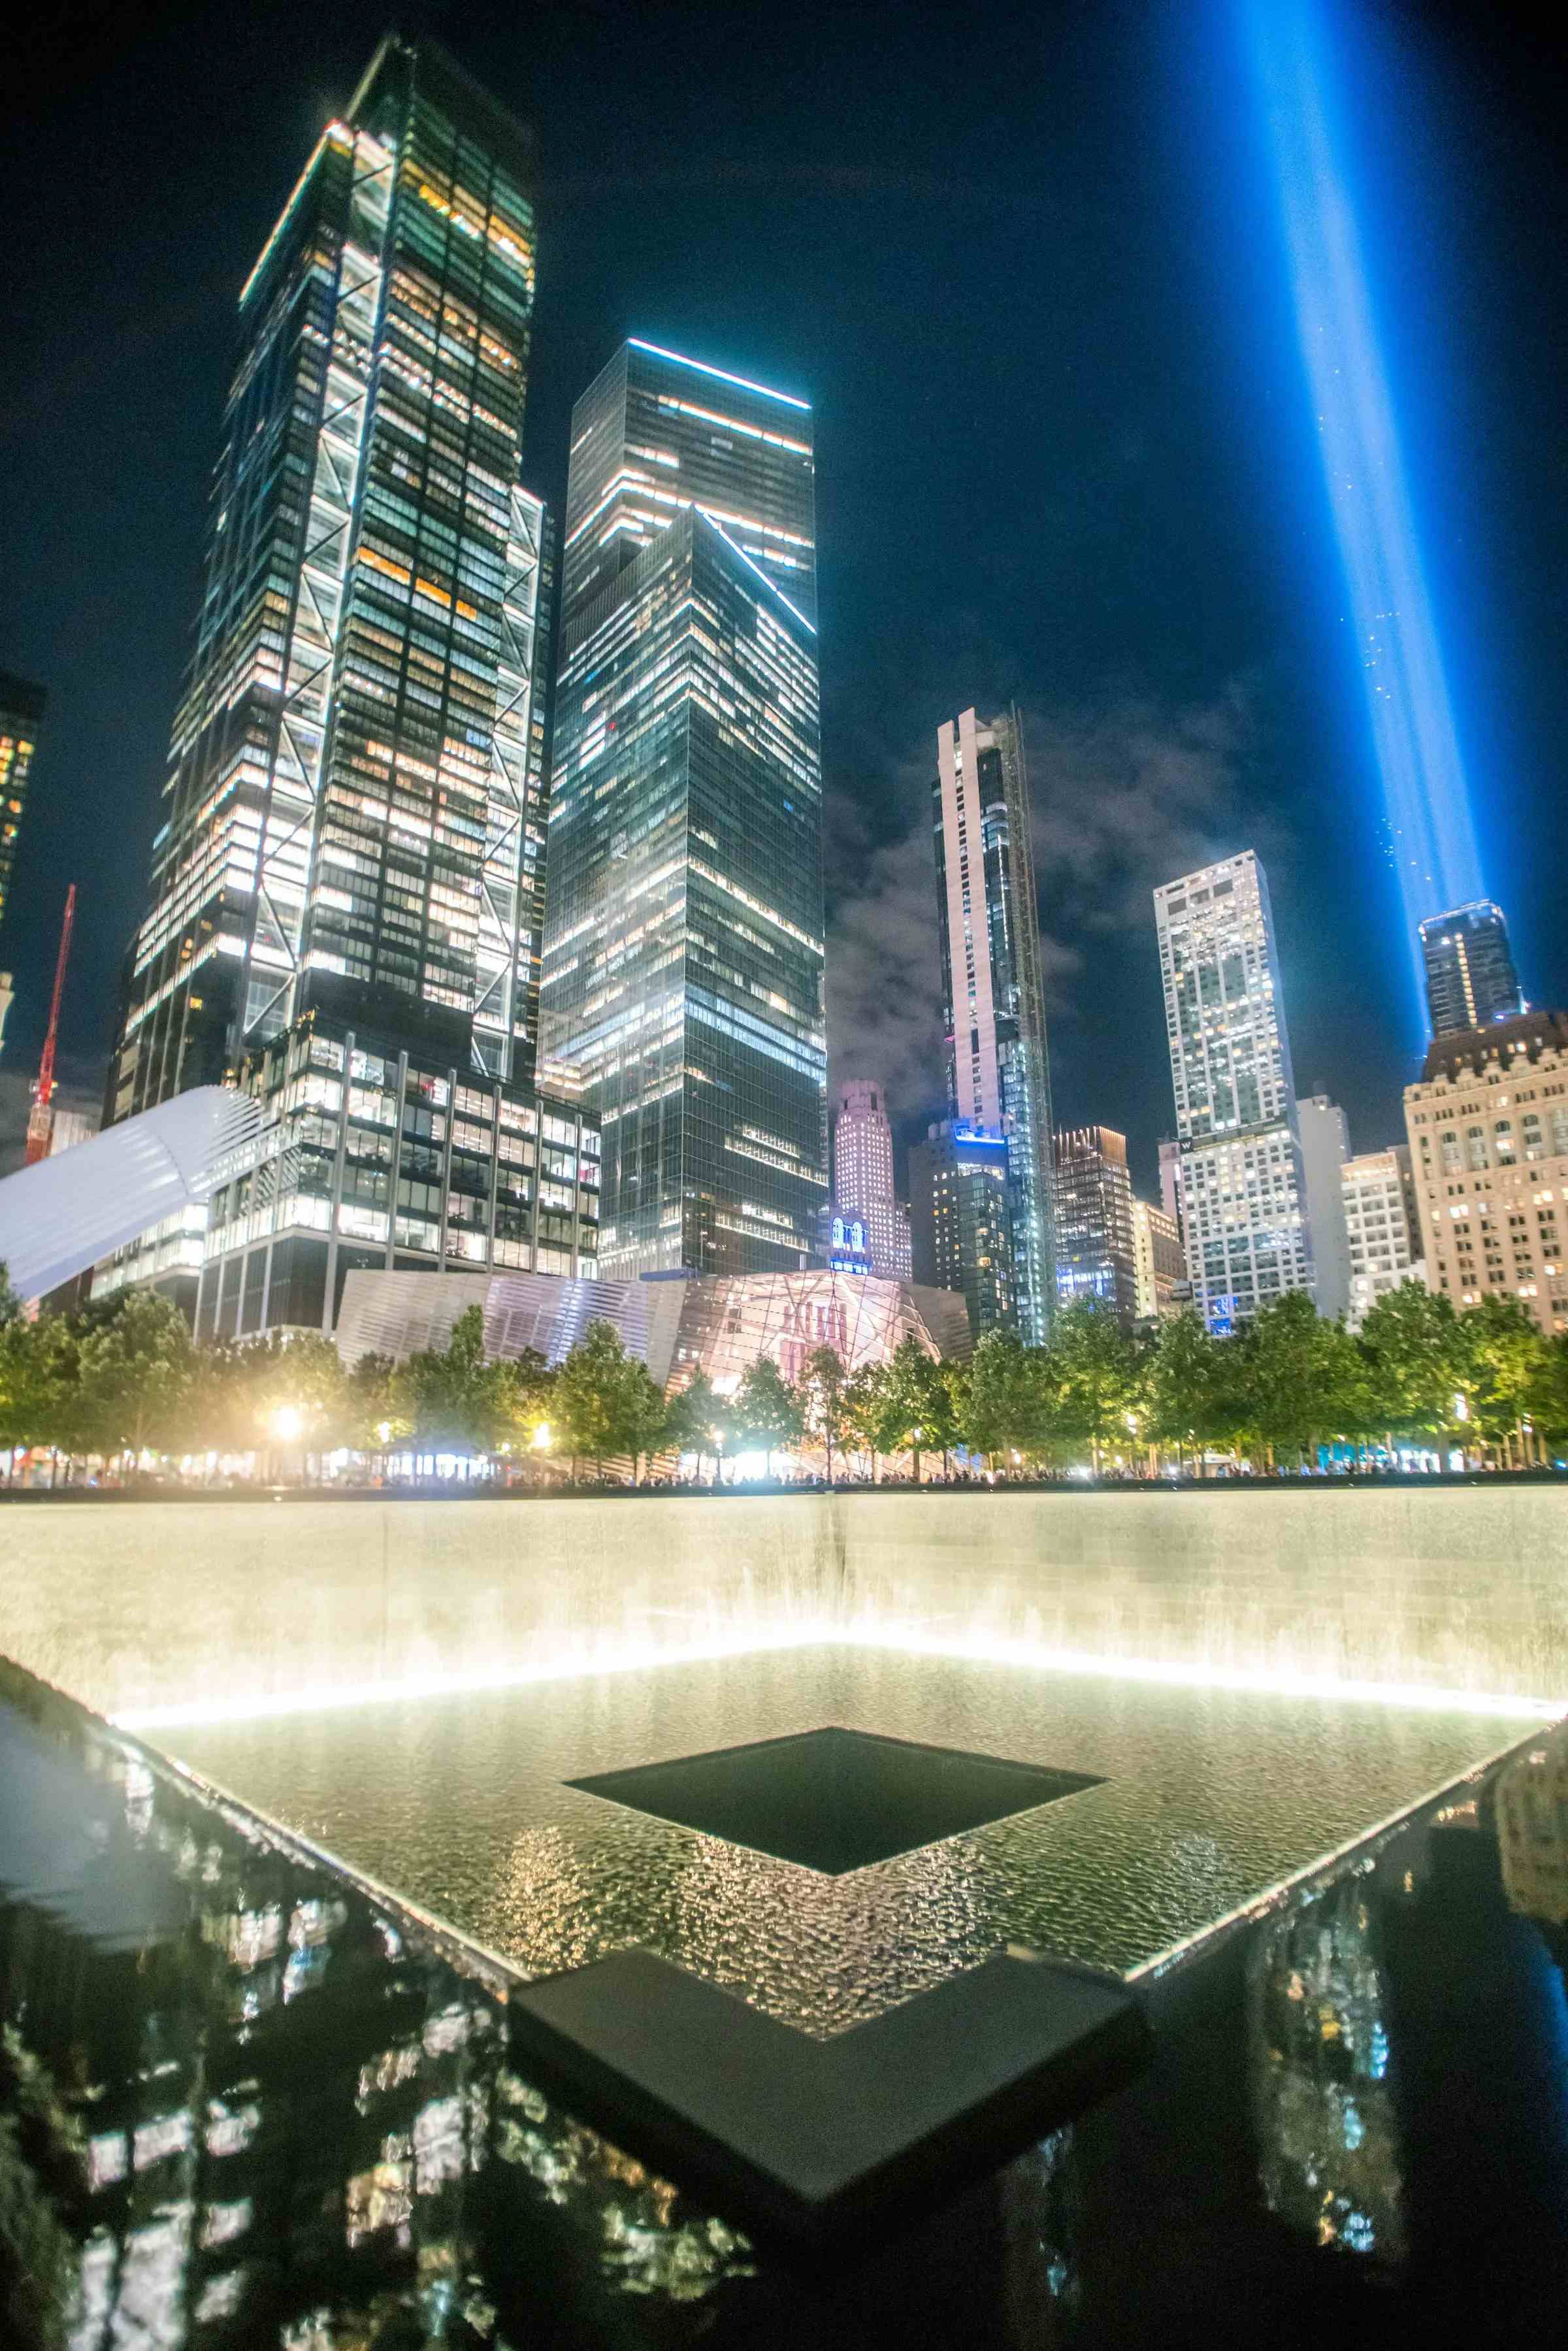 National September 11 Memorial & Museum image